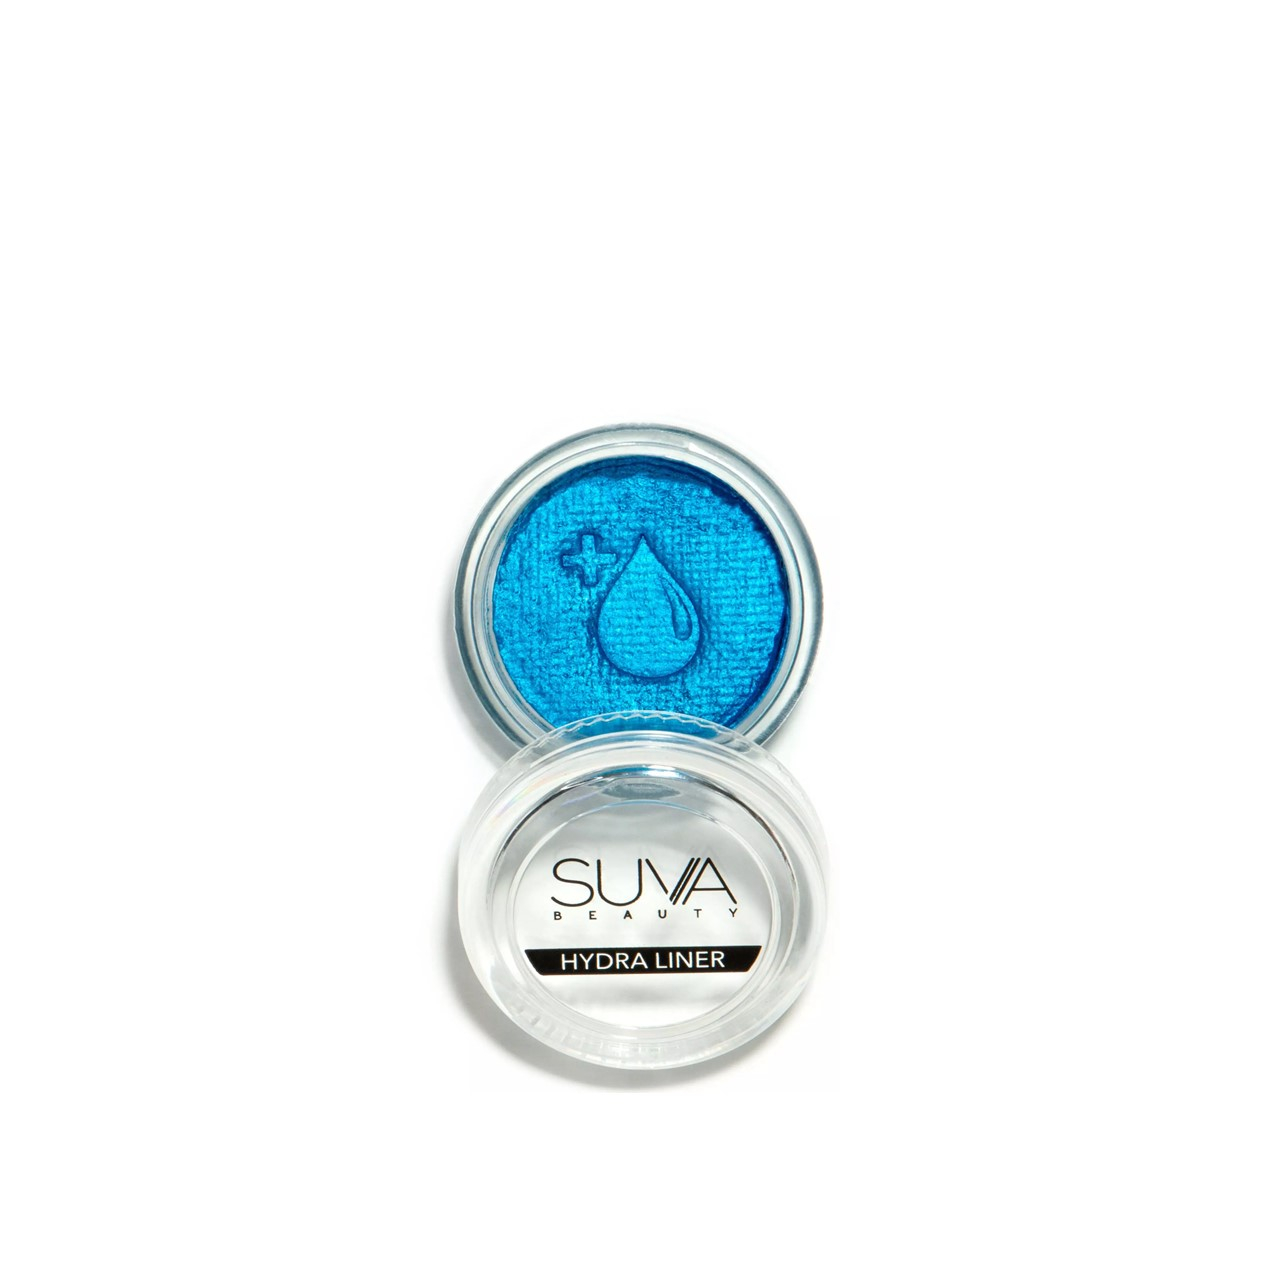 SUVA Beauty Hydra Liner Blue Steel Chrome Cake Eyeliner 10g (0.35oz)